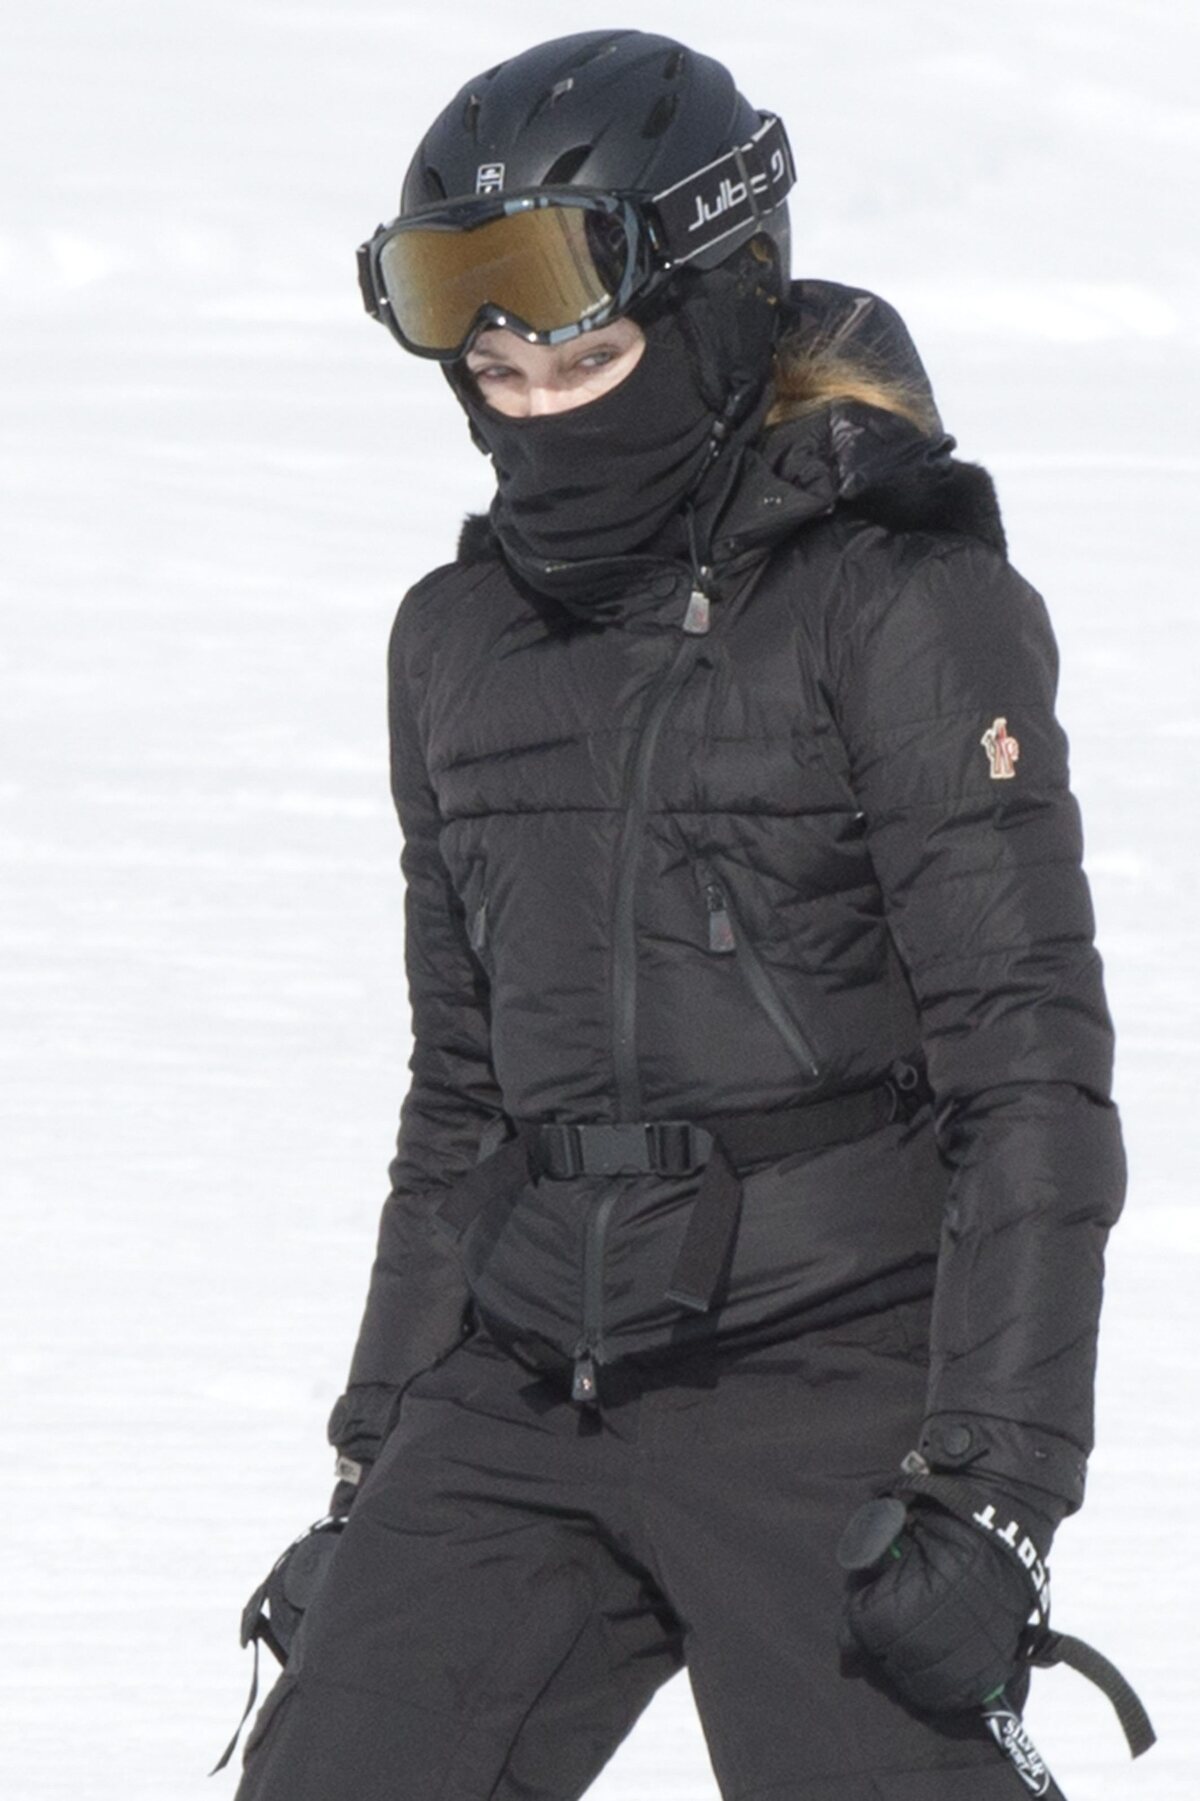 Мадонна катается на лыжах в Швейцарии